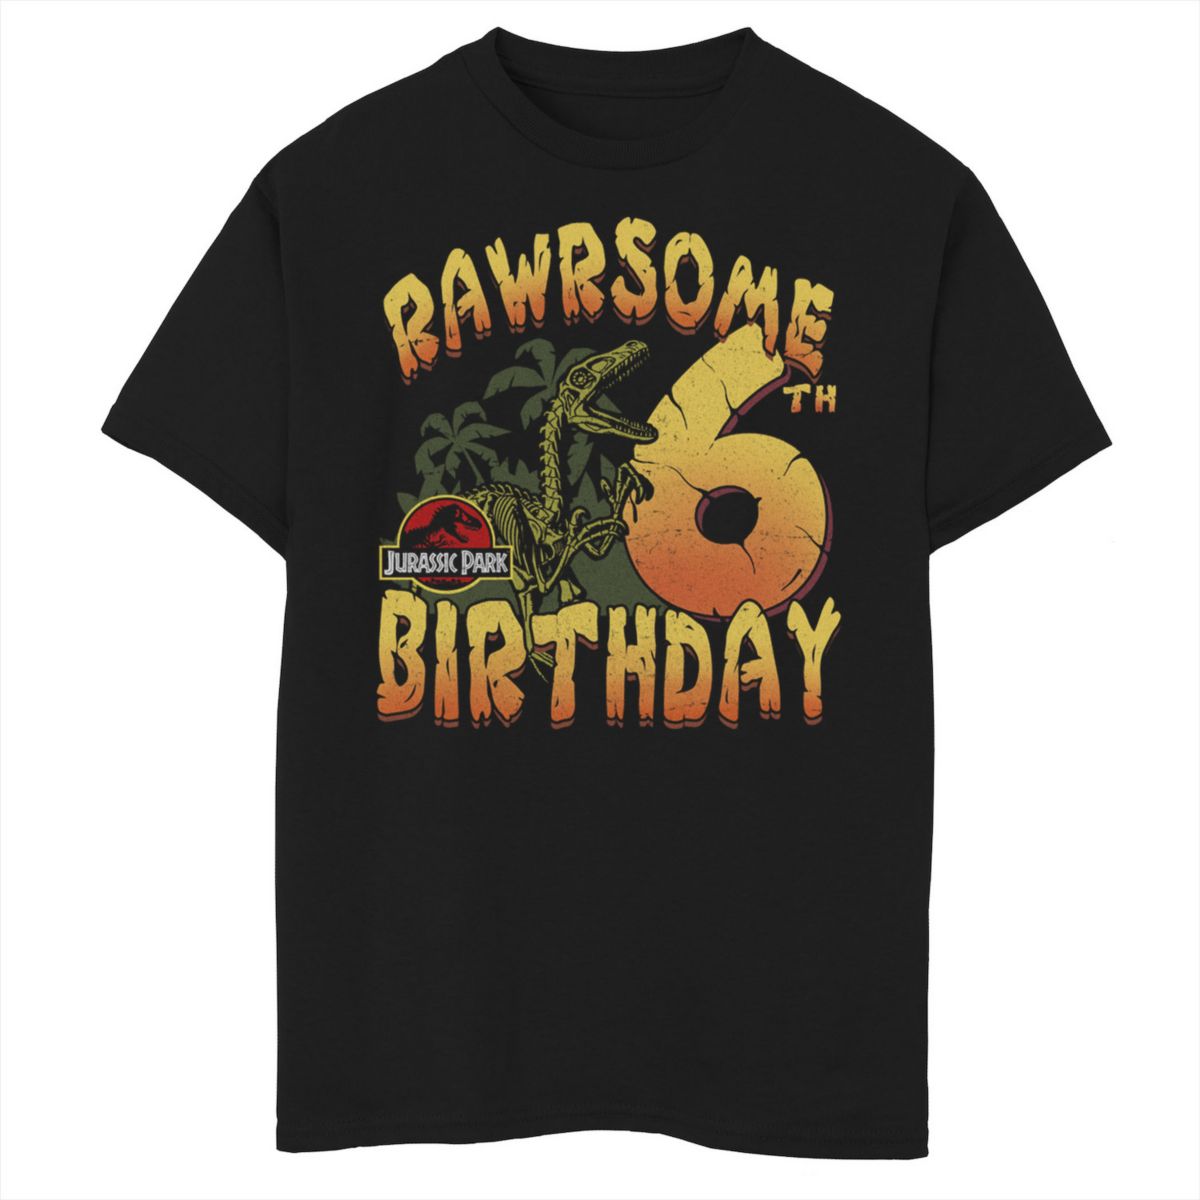 Футболка для мальчиков 8-20 Jurassic Park Rawrsome с рисунком на шестой день рождения Jurassic Park